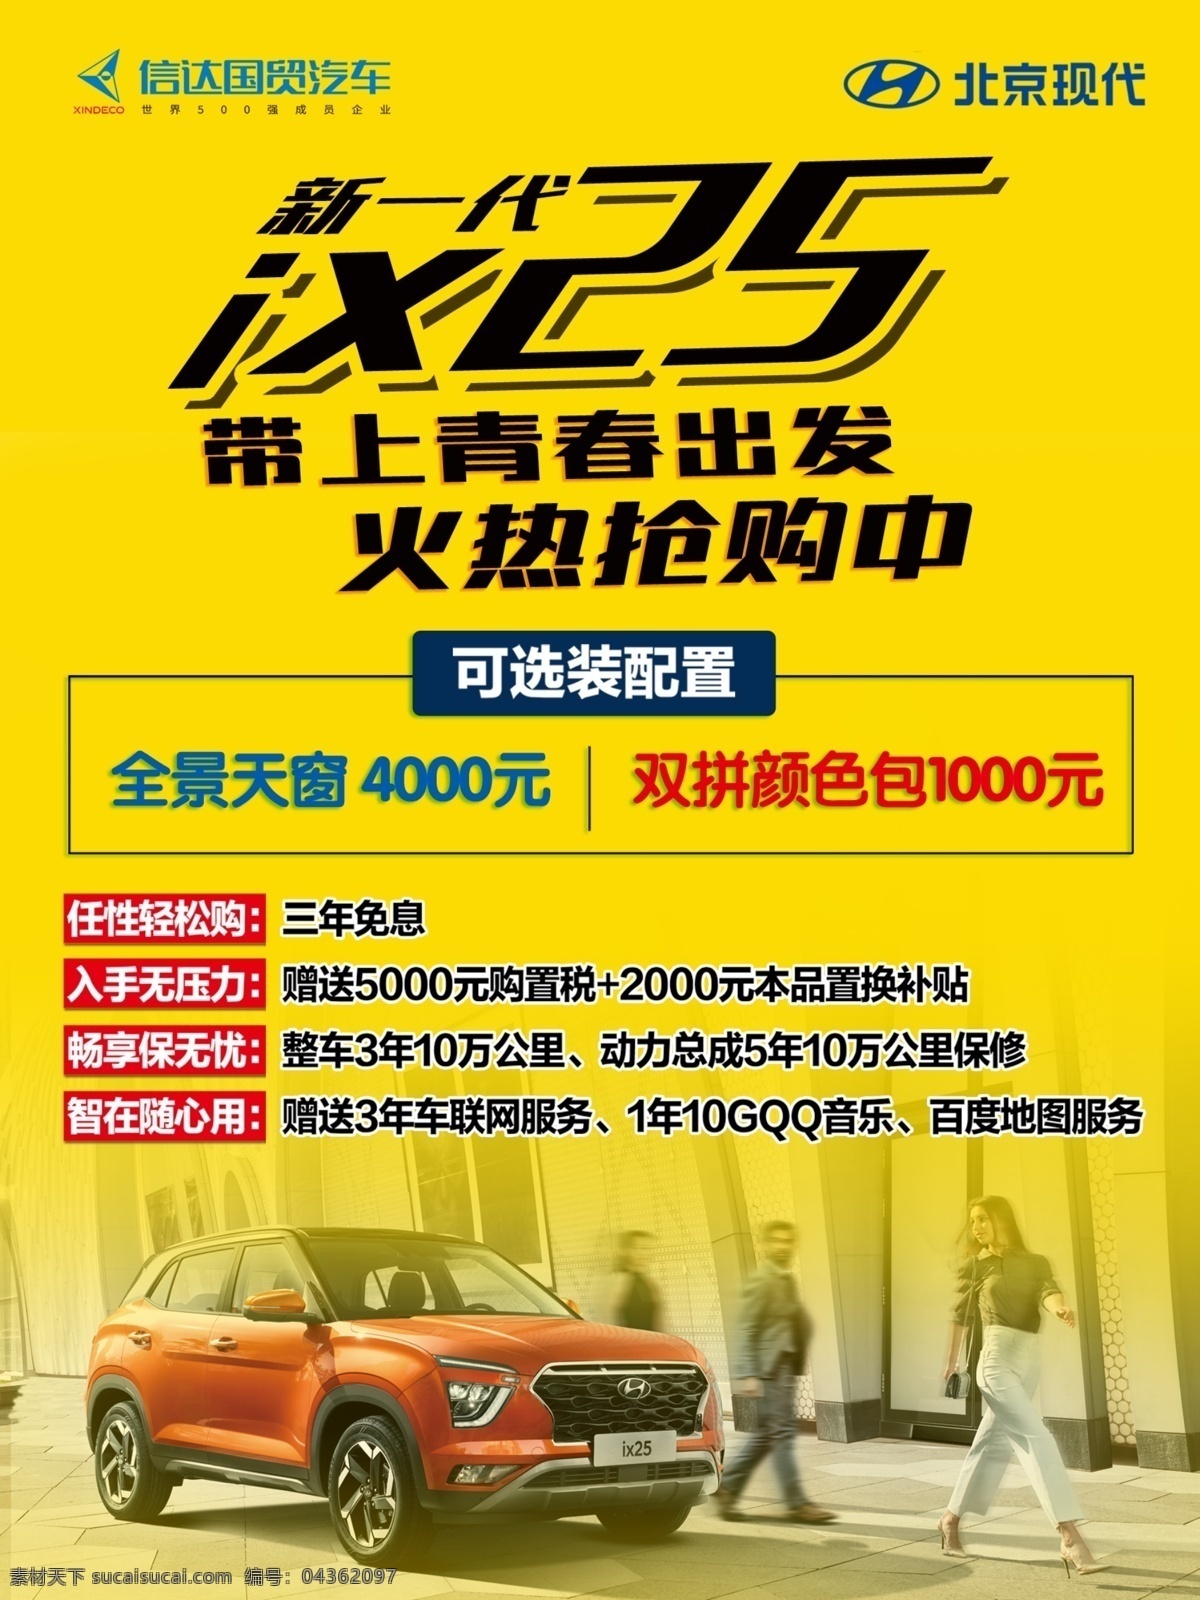 ix25画架 北京现代 ix 展示促销 画架 新车 黄色 橙色 广告牌 海报 汽车 抢购 火热 青春 新一代 亮点介绍 亮点车型